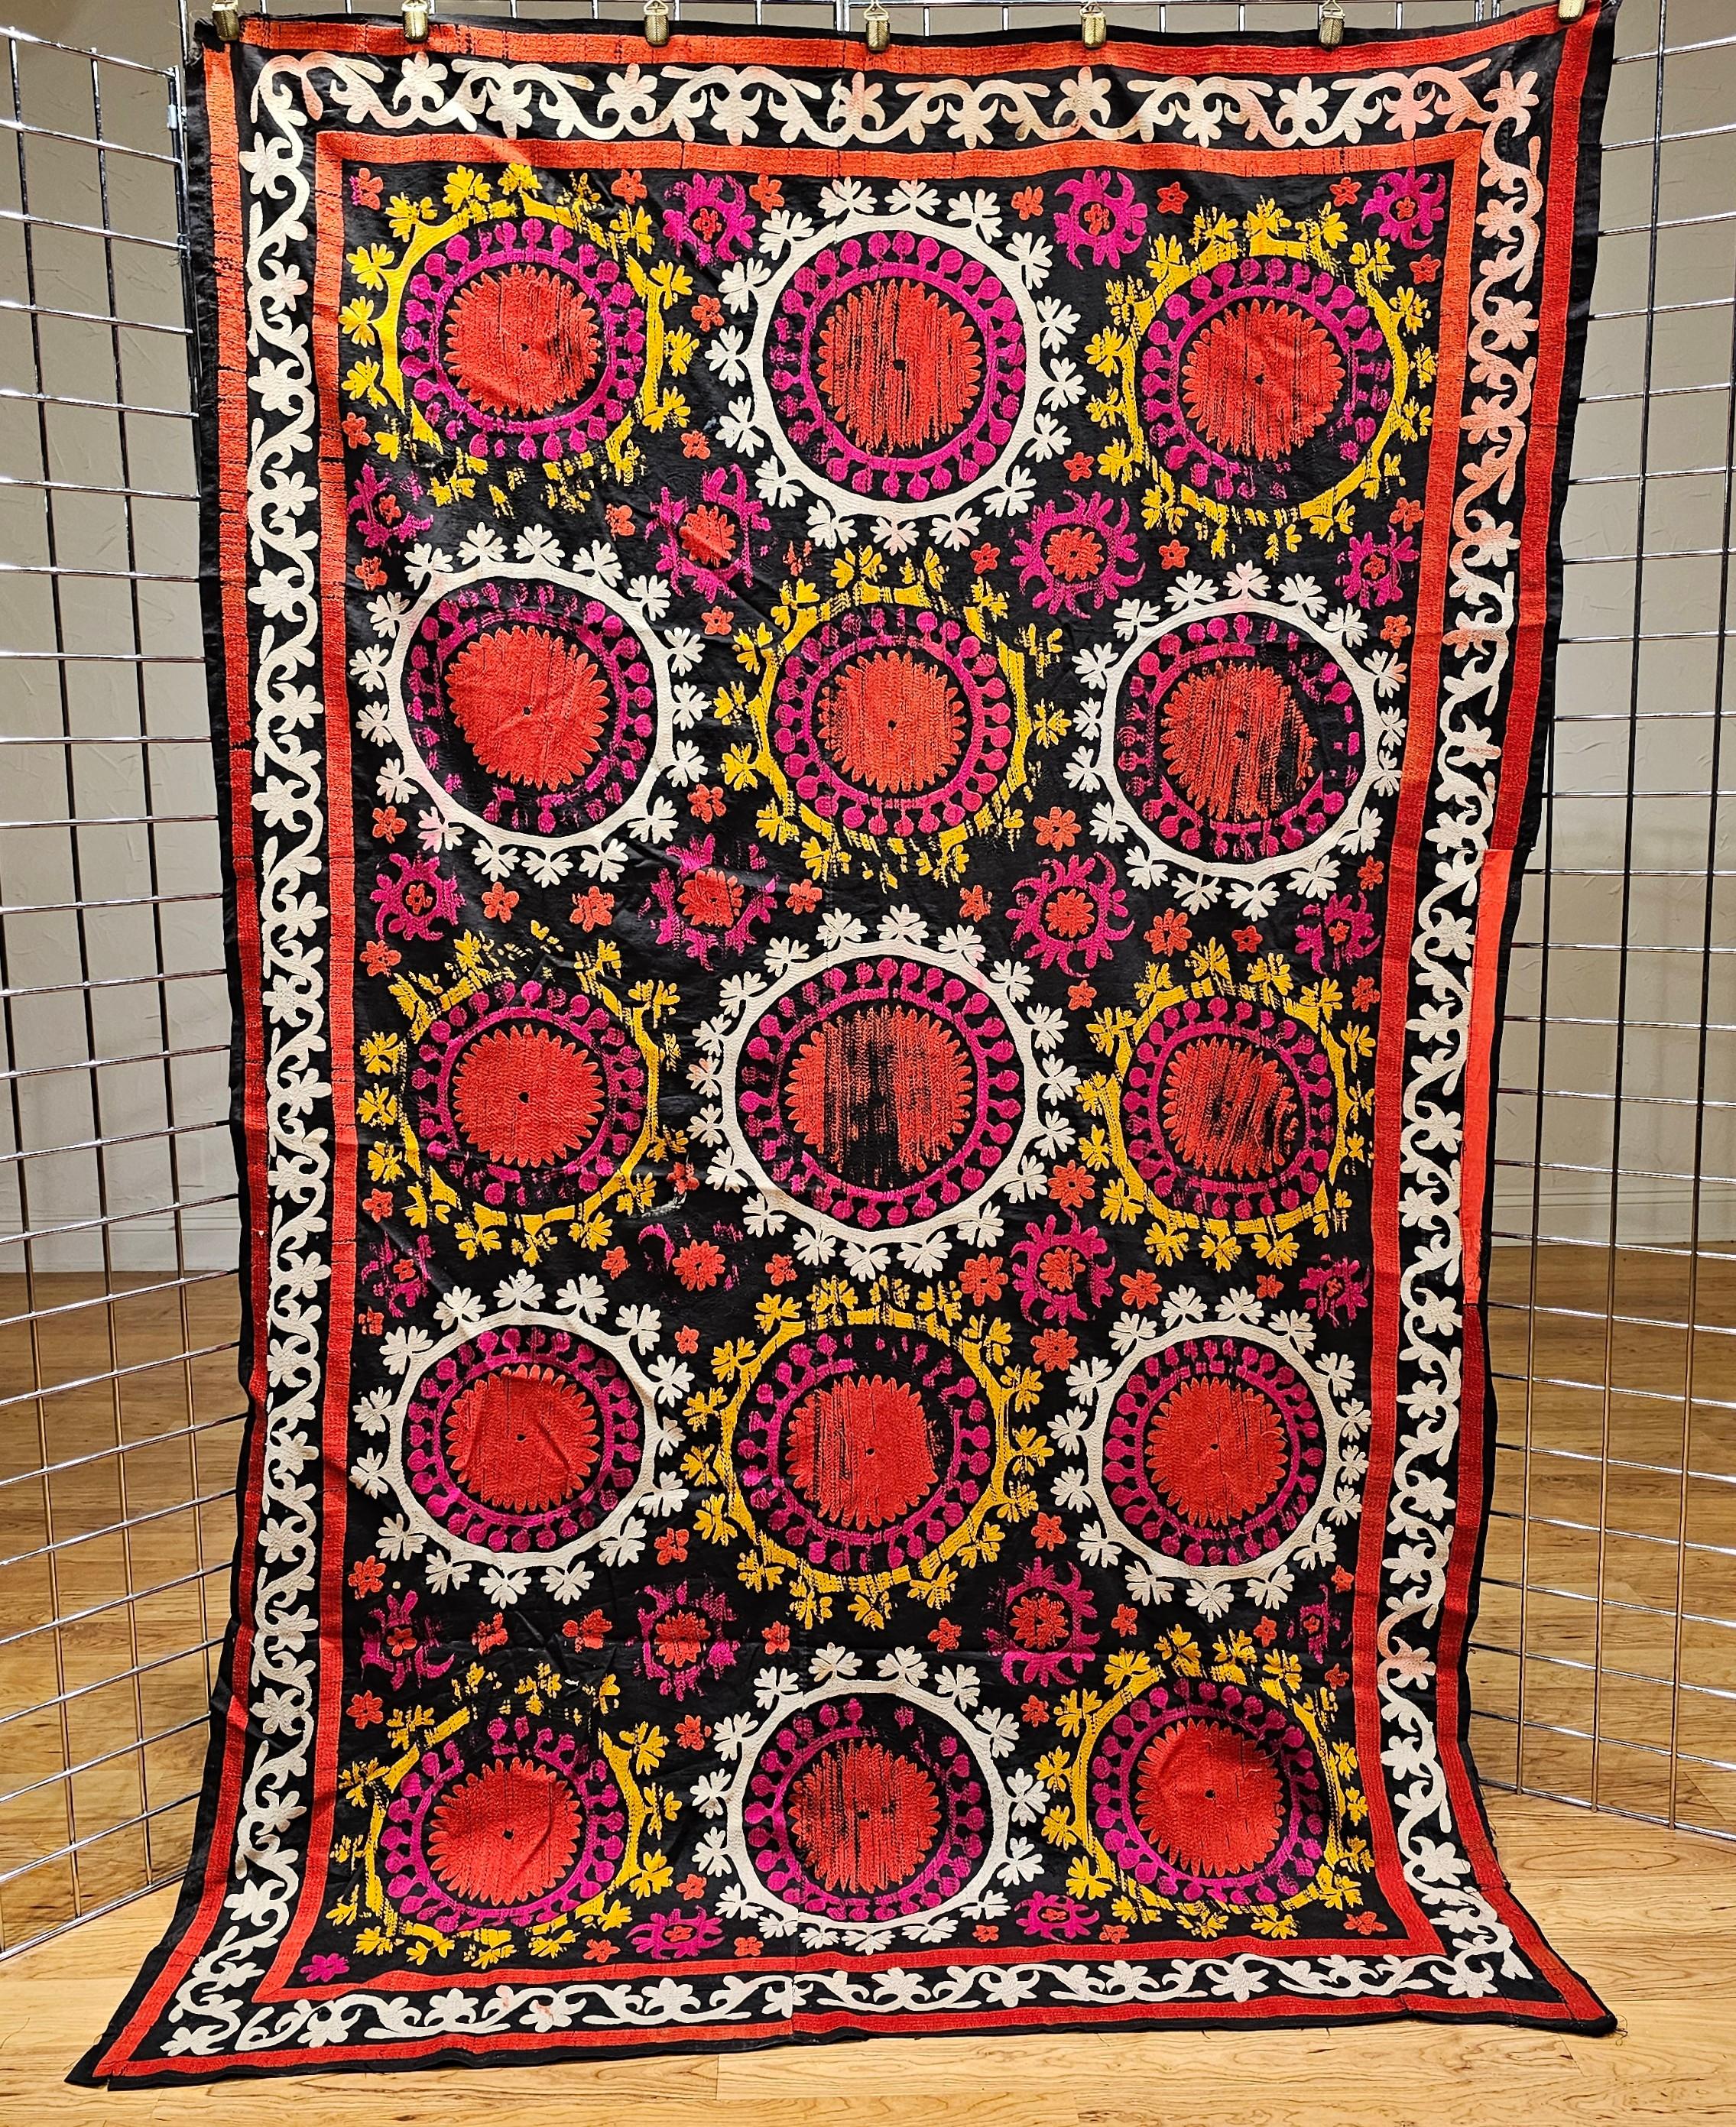 Broderie vintage en soie Suzani, réalisée à la main en Ouzbékistan, en Asie centrale, sur fond de coton noir et motifs en soie de couleur noire, ivoire, jaune et rouge.  Le design de chaque panneau est constitué de motifs floraux finement brodés en